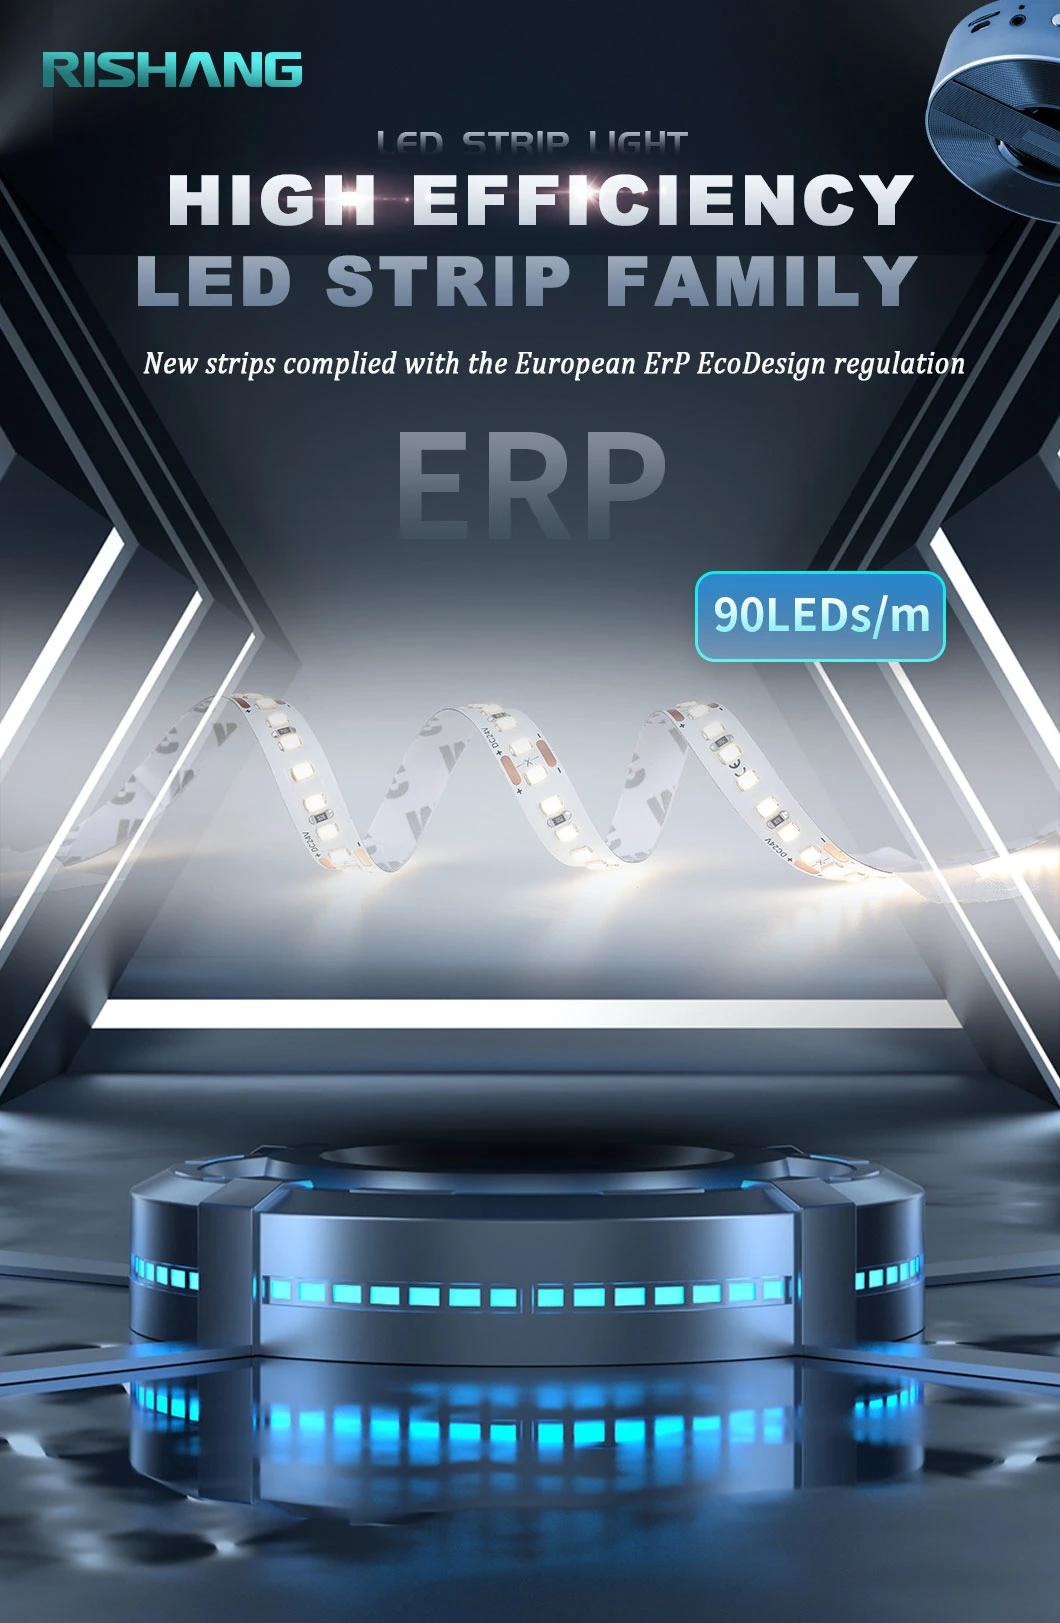 LED Ceiling Strip Lights, LED RGB Strip Lights, How to Install LED Strip Lights, DIY LED Strip